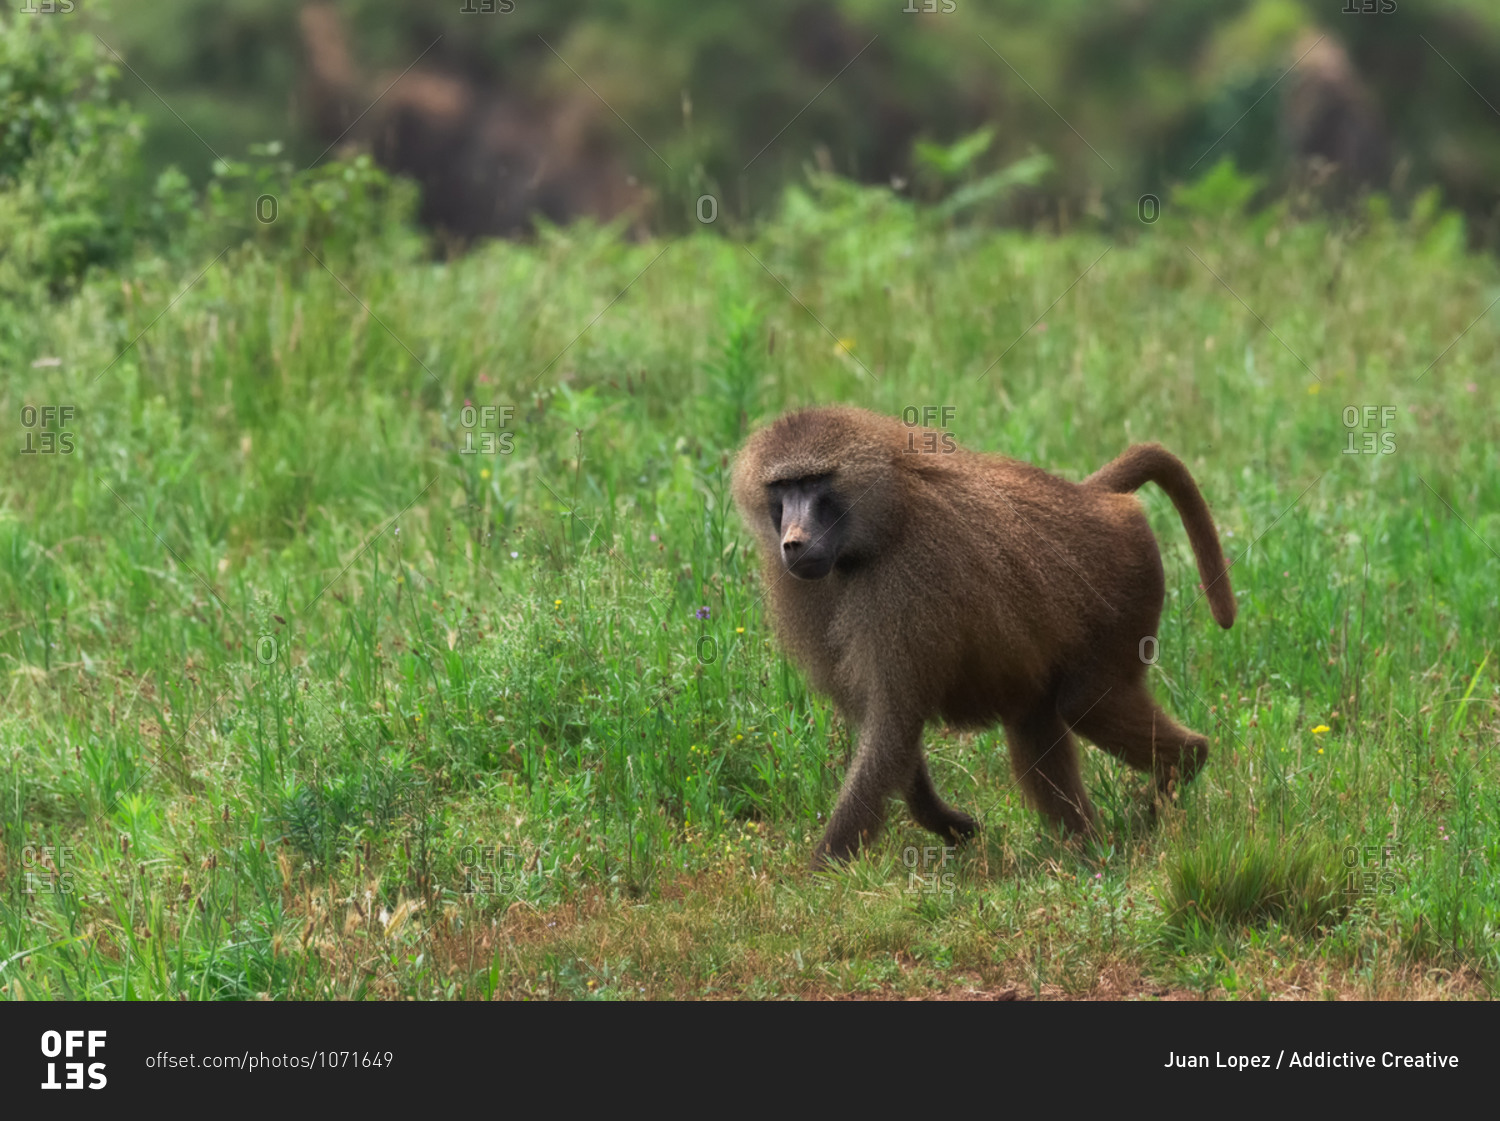 Monkey walking along trail in forest